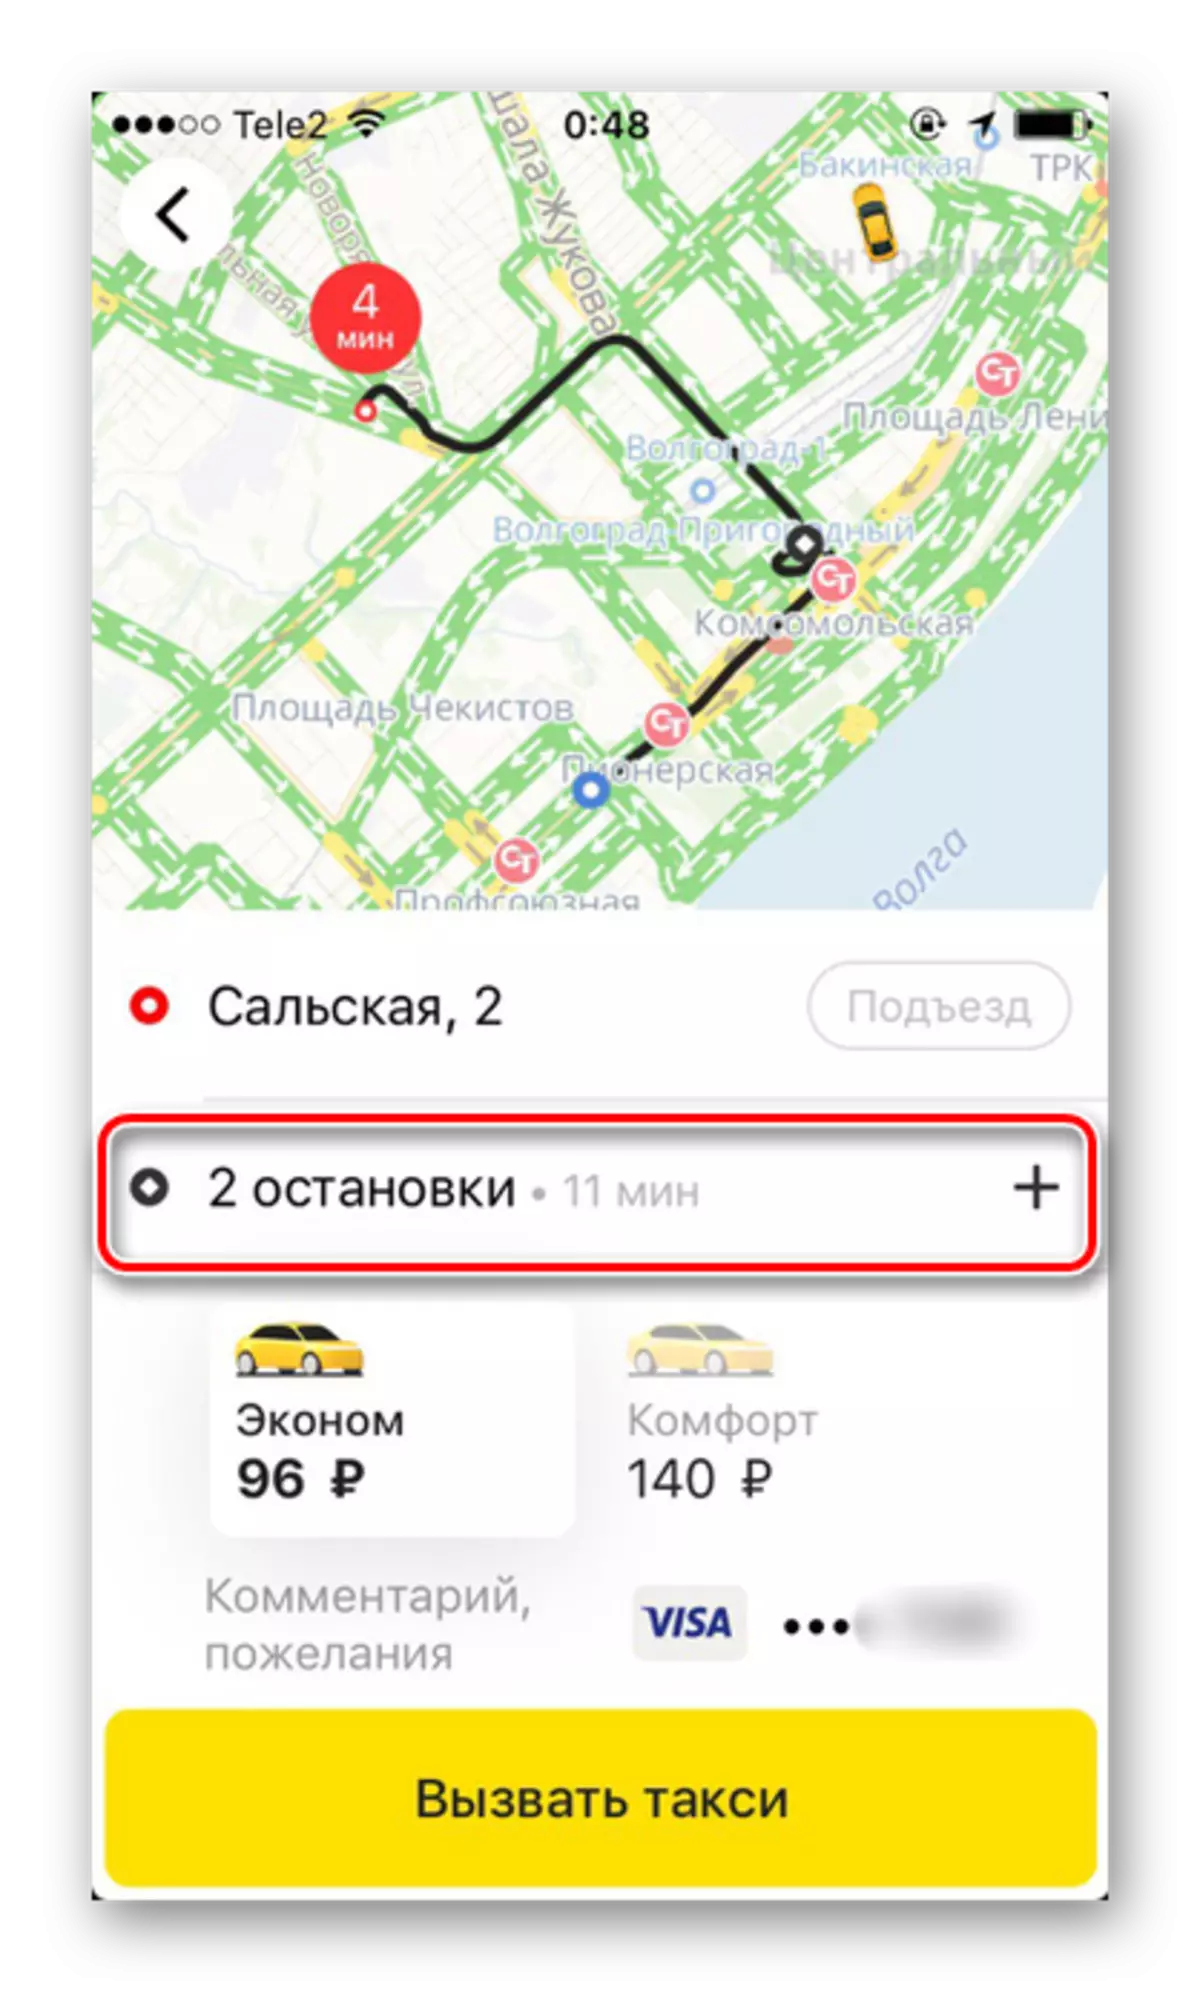 אַ קאָמפּלעקס מאַרשרוט מיט קייפל סטאַפּס ווען אָרדערינג אַ טאַקסי אין Yandex.taxi אַפּלאַקיישאַן אויף iPhone